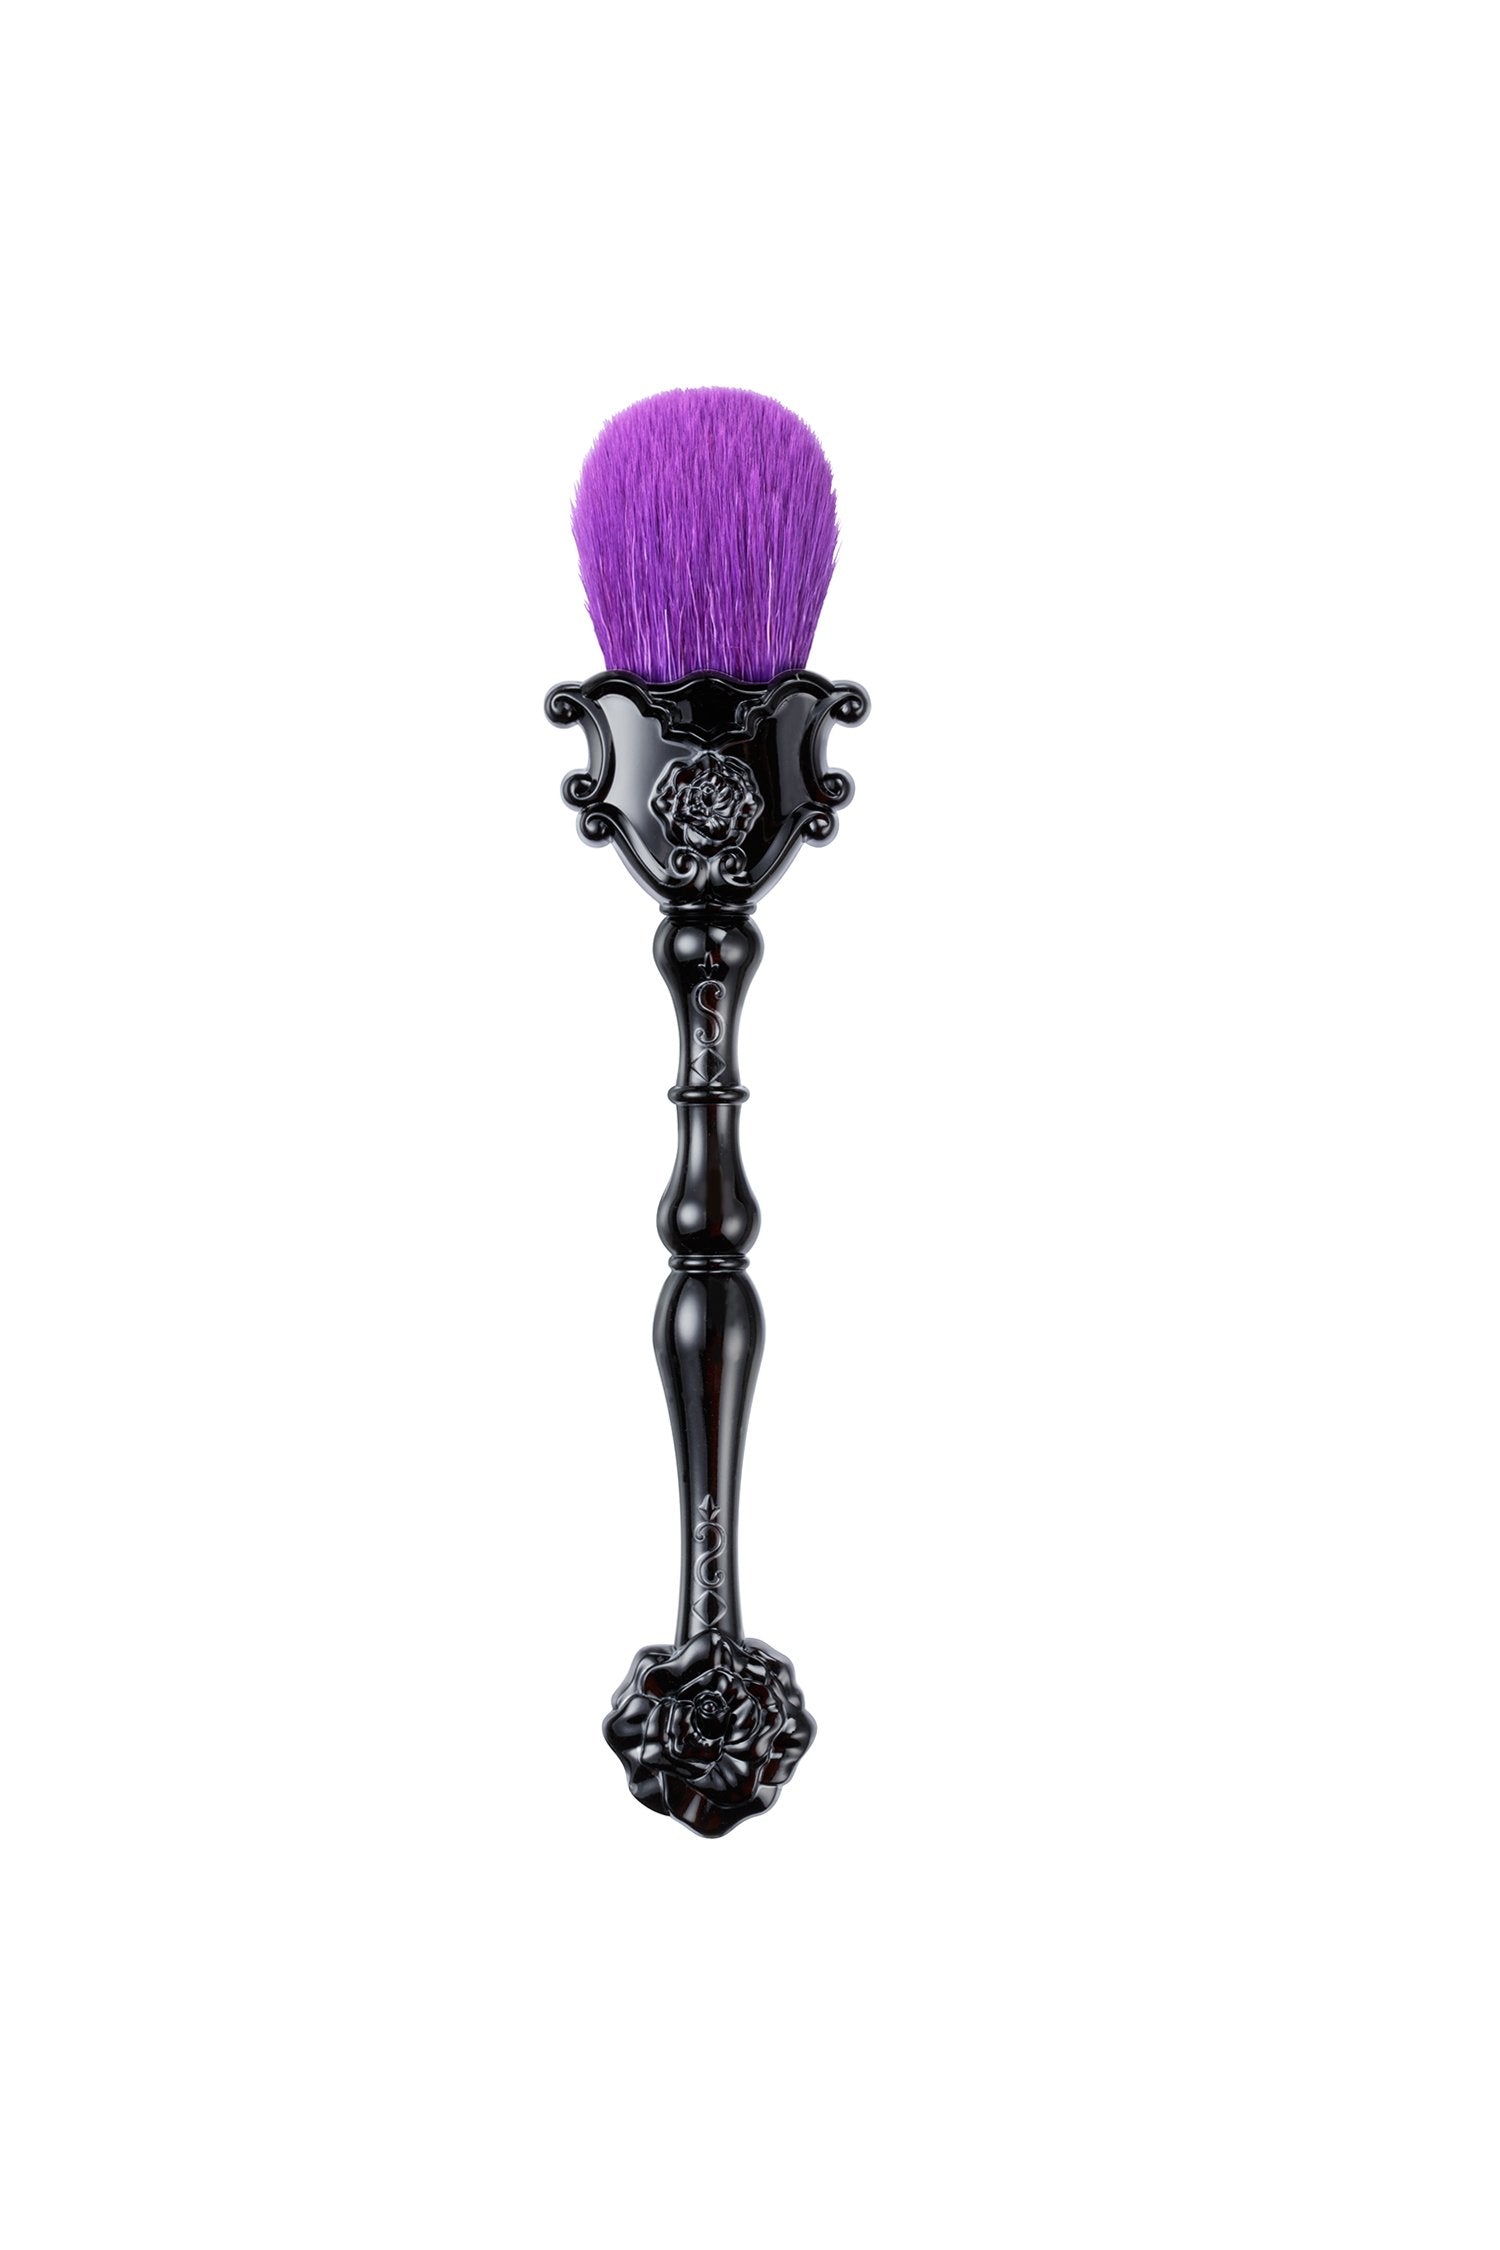 Vanity Face Brush, un pinceau violet sur un support élégant avec un motif floral en relief